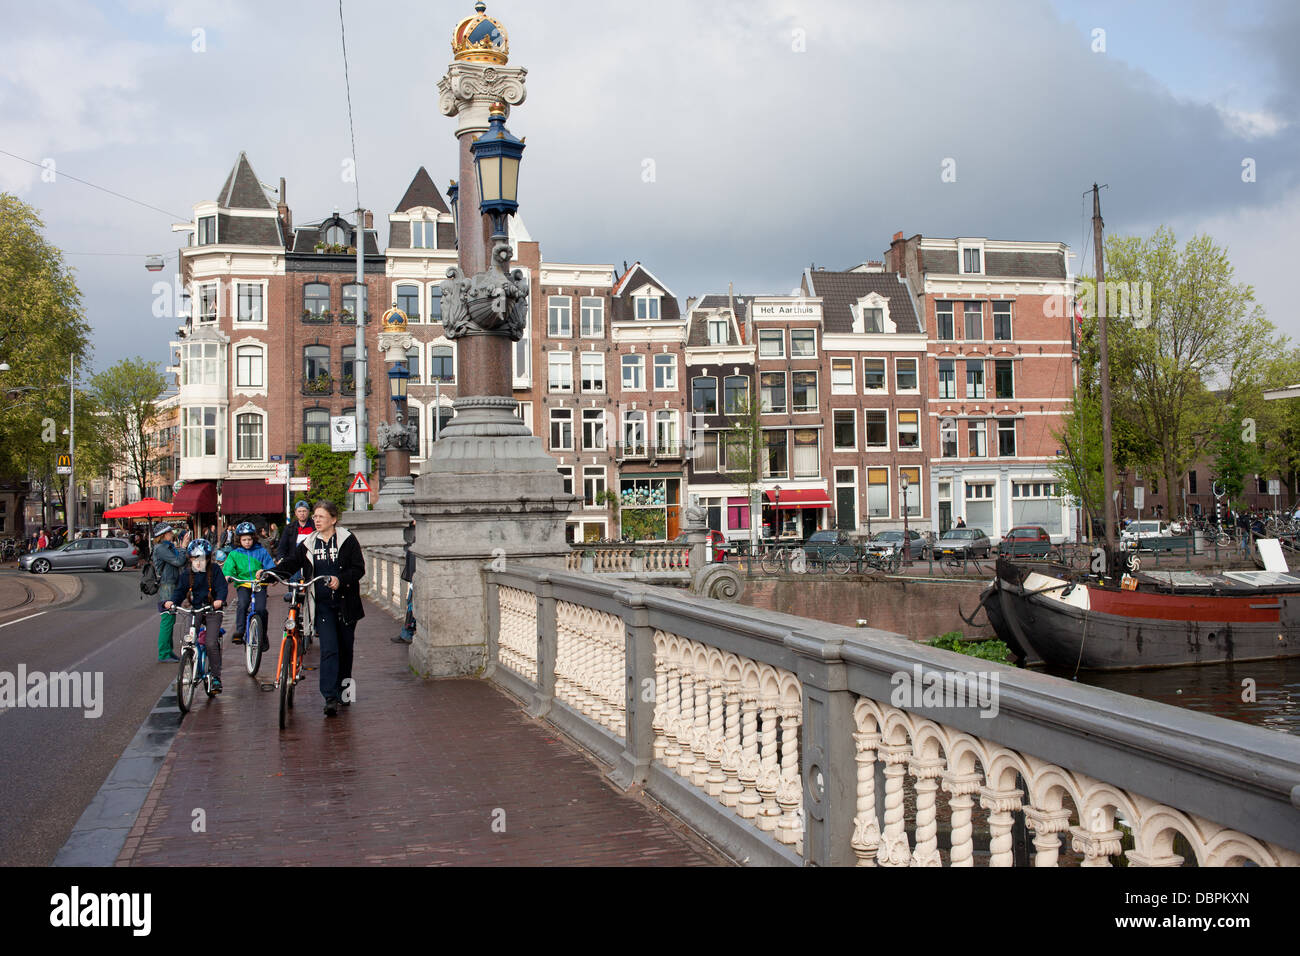 Sur le trottoir du pont (Hogesluis Hoge Brug Sluis) et les maisons historiques, la ville d'Amsterdam en Hollande, aux Pays-Bas. Banque D'Images